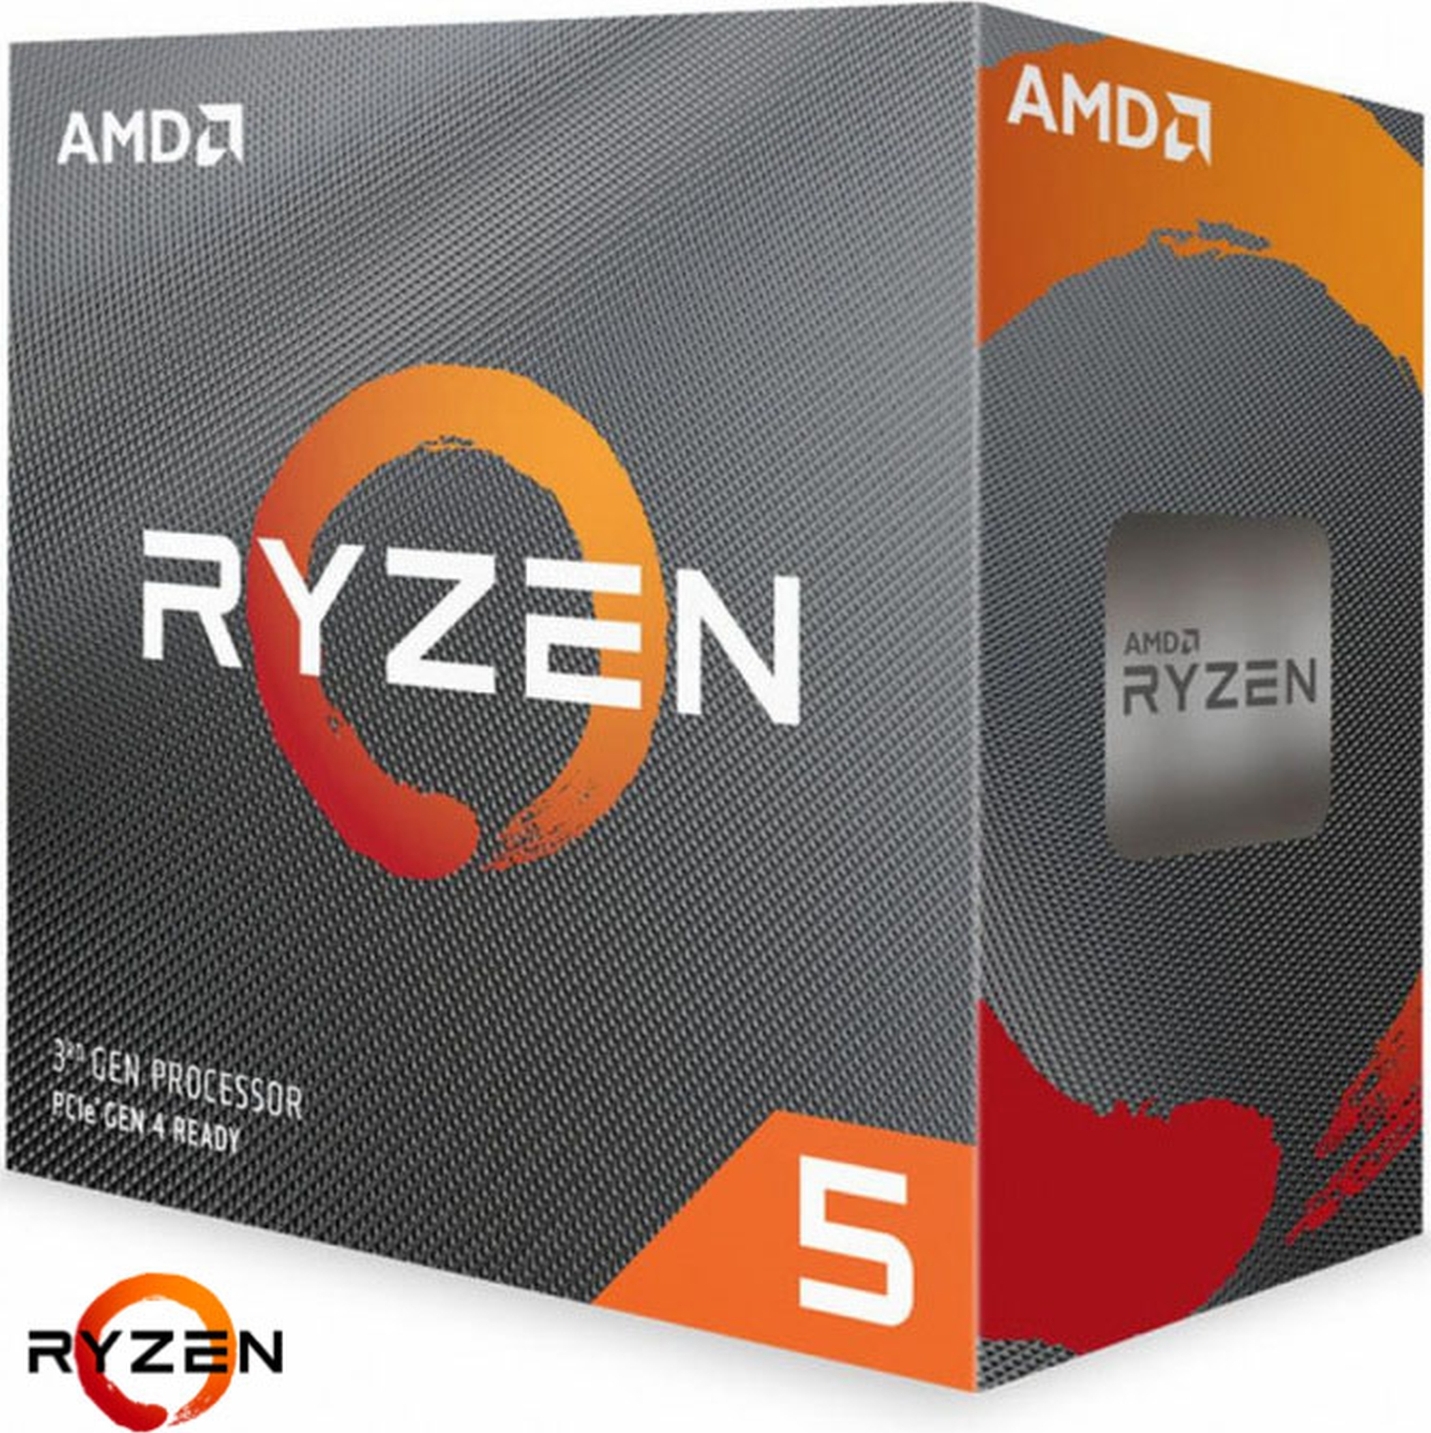 AMDПроцессорRyzen53600BOX(скулером).Уцененныйтовар